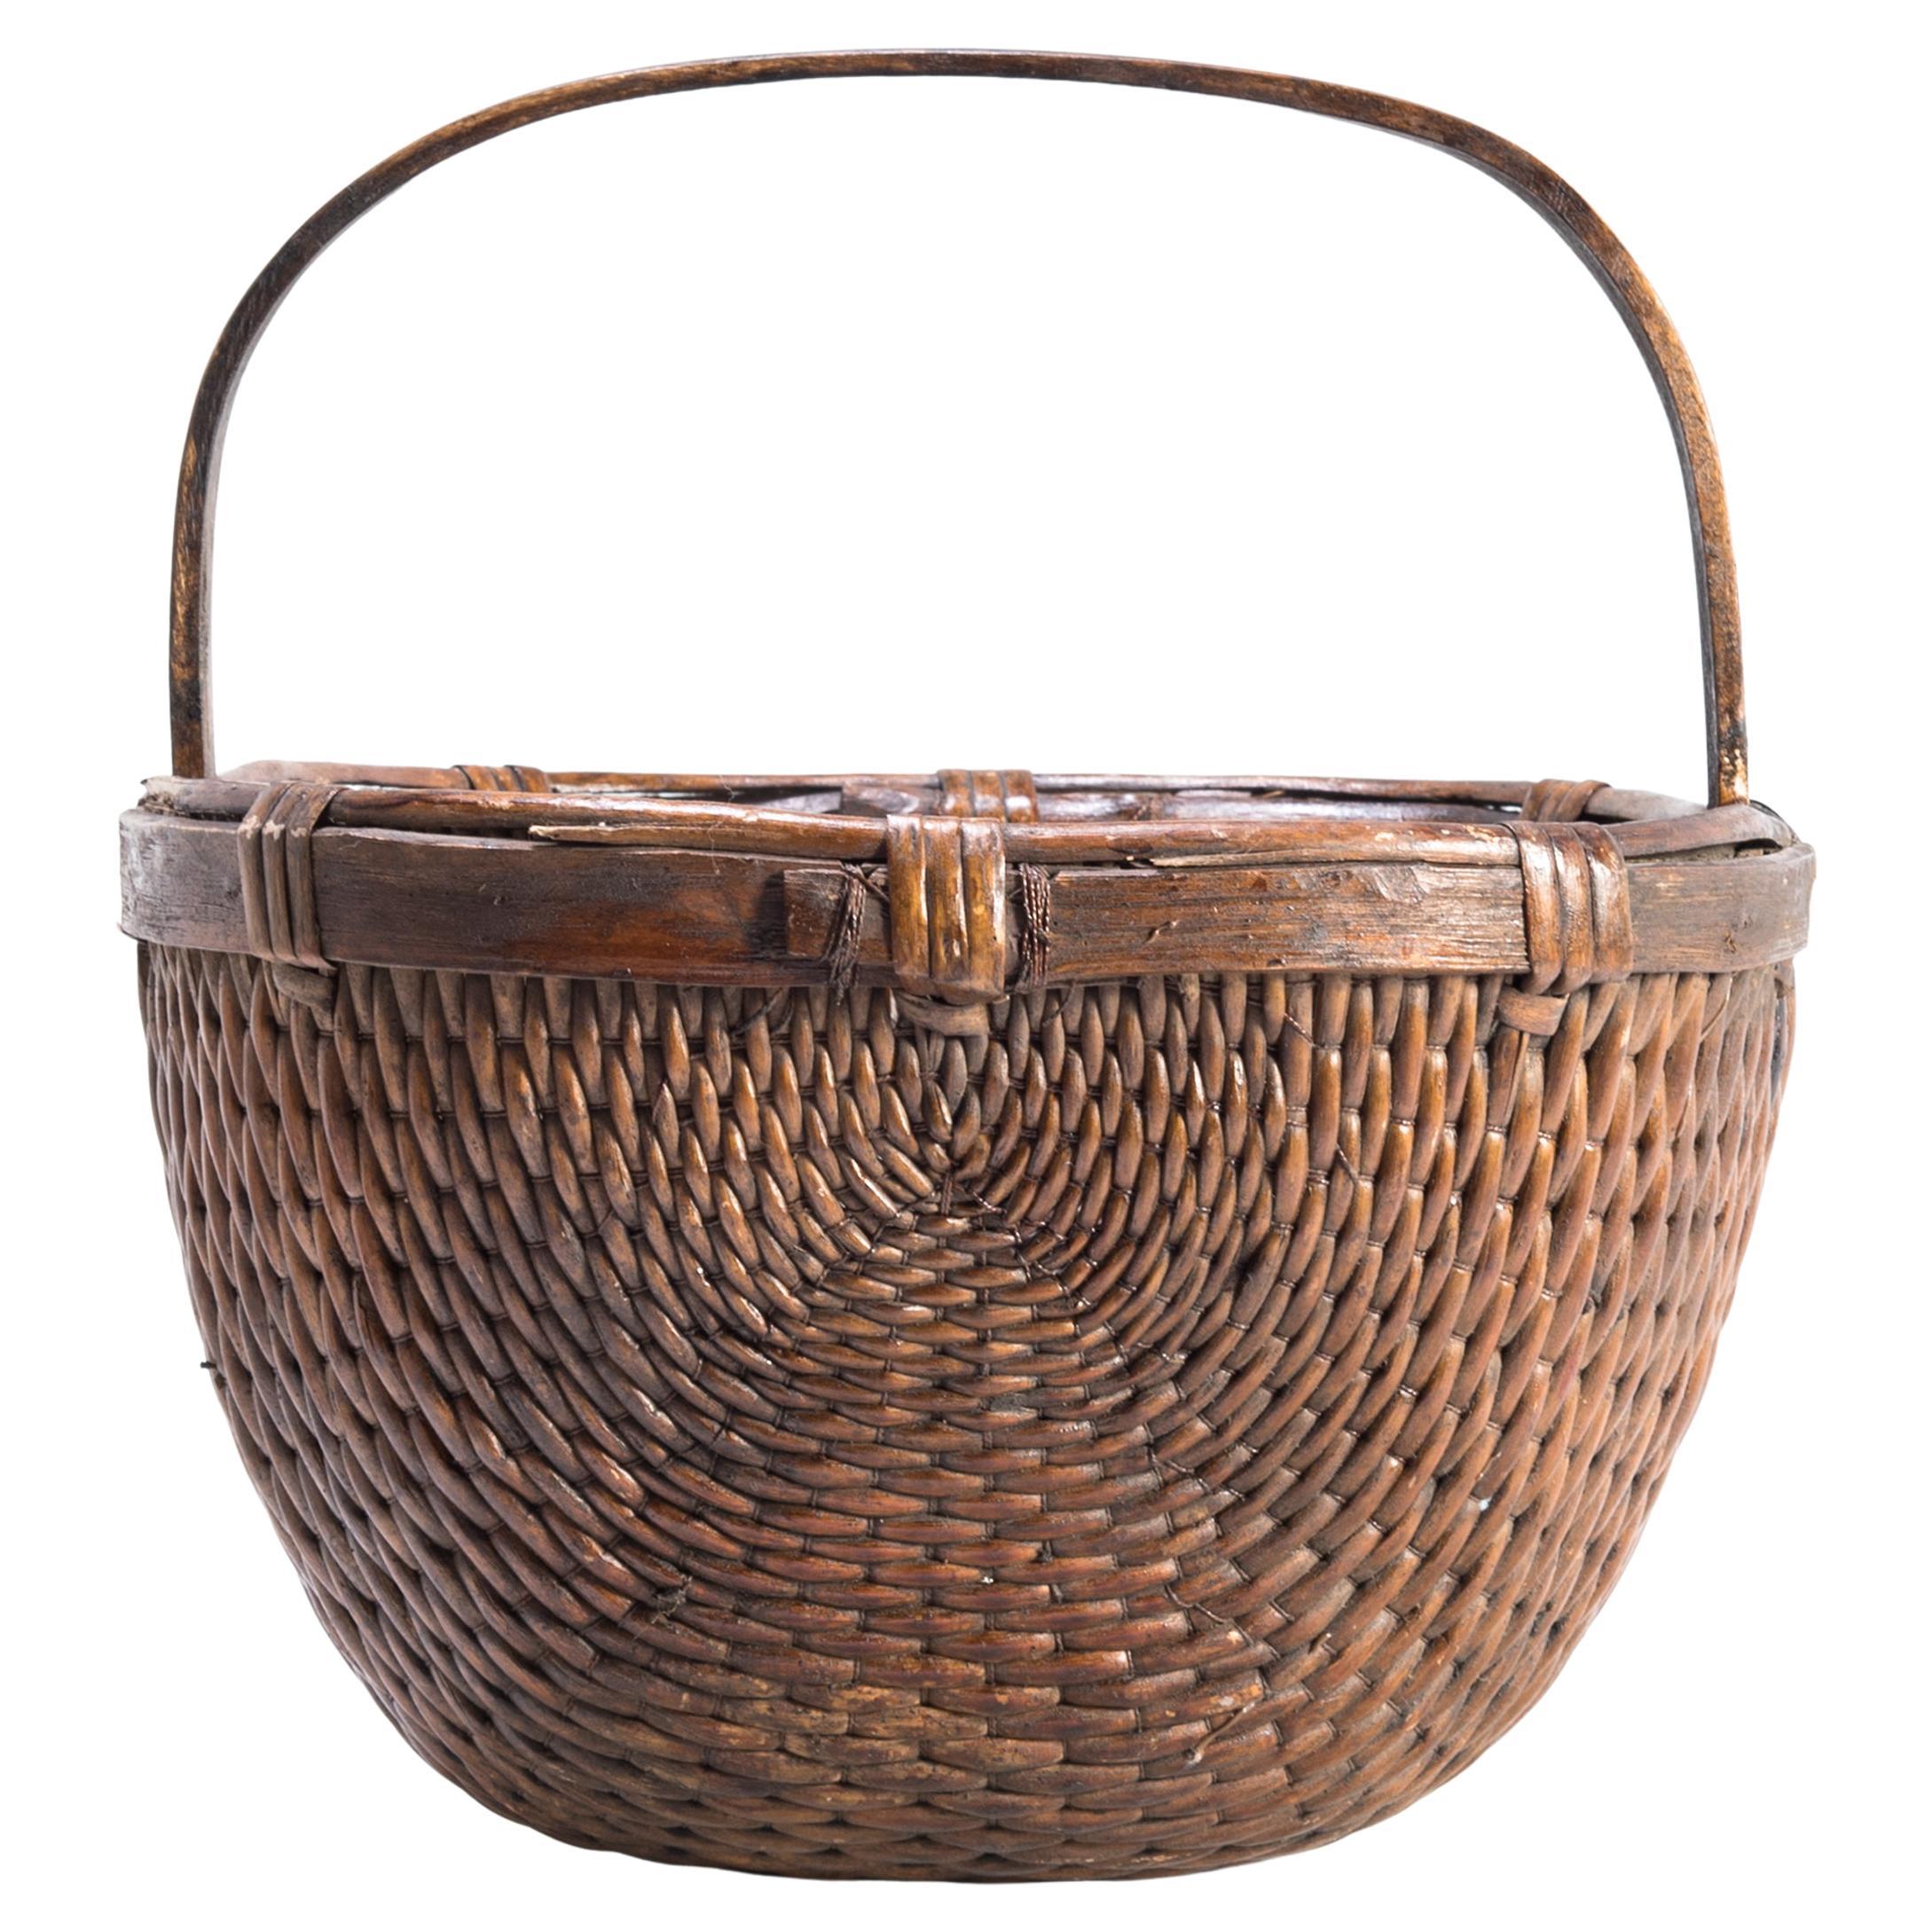 Chinese Willow Market Basket, circa 1900